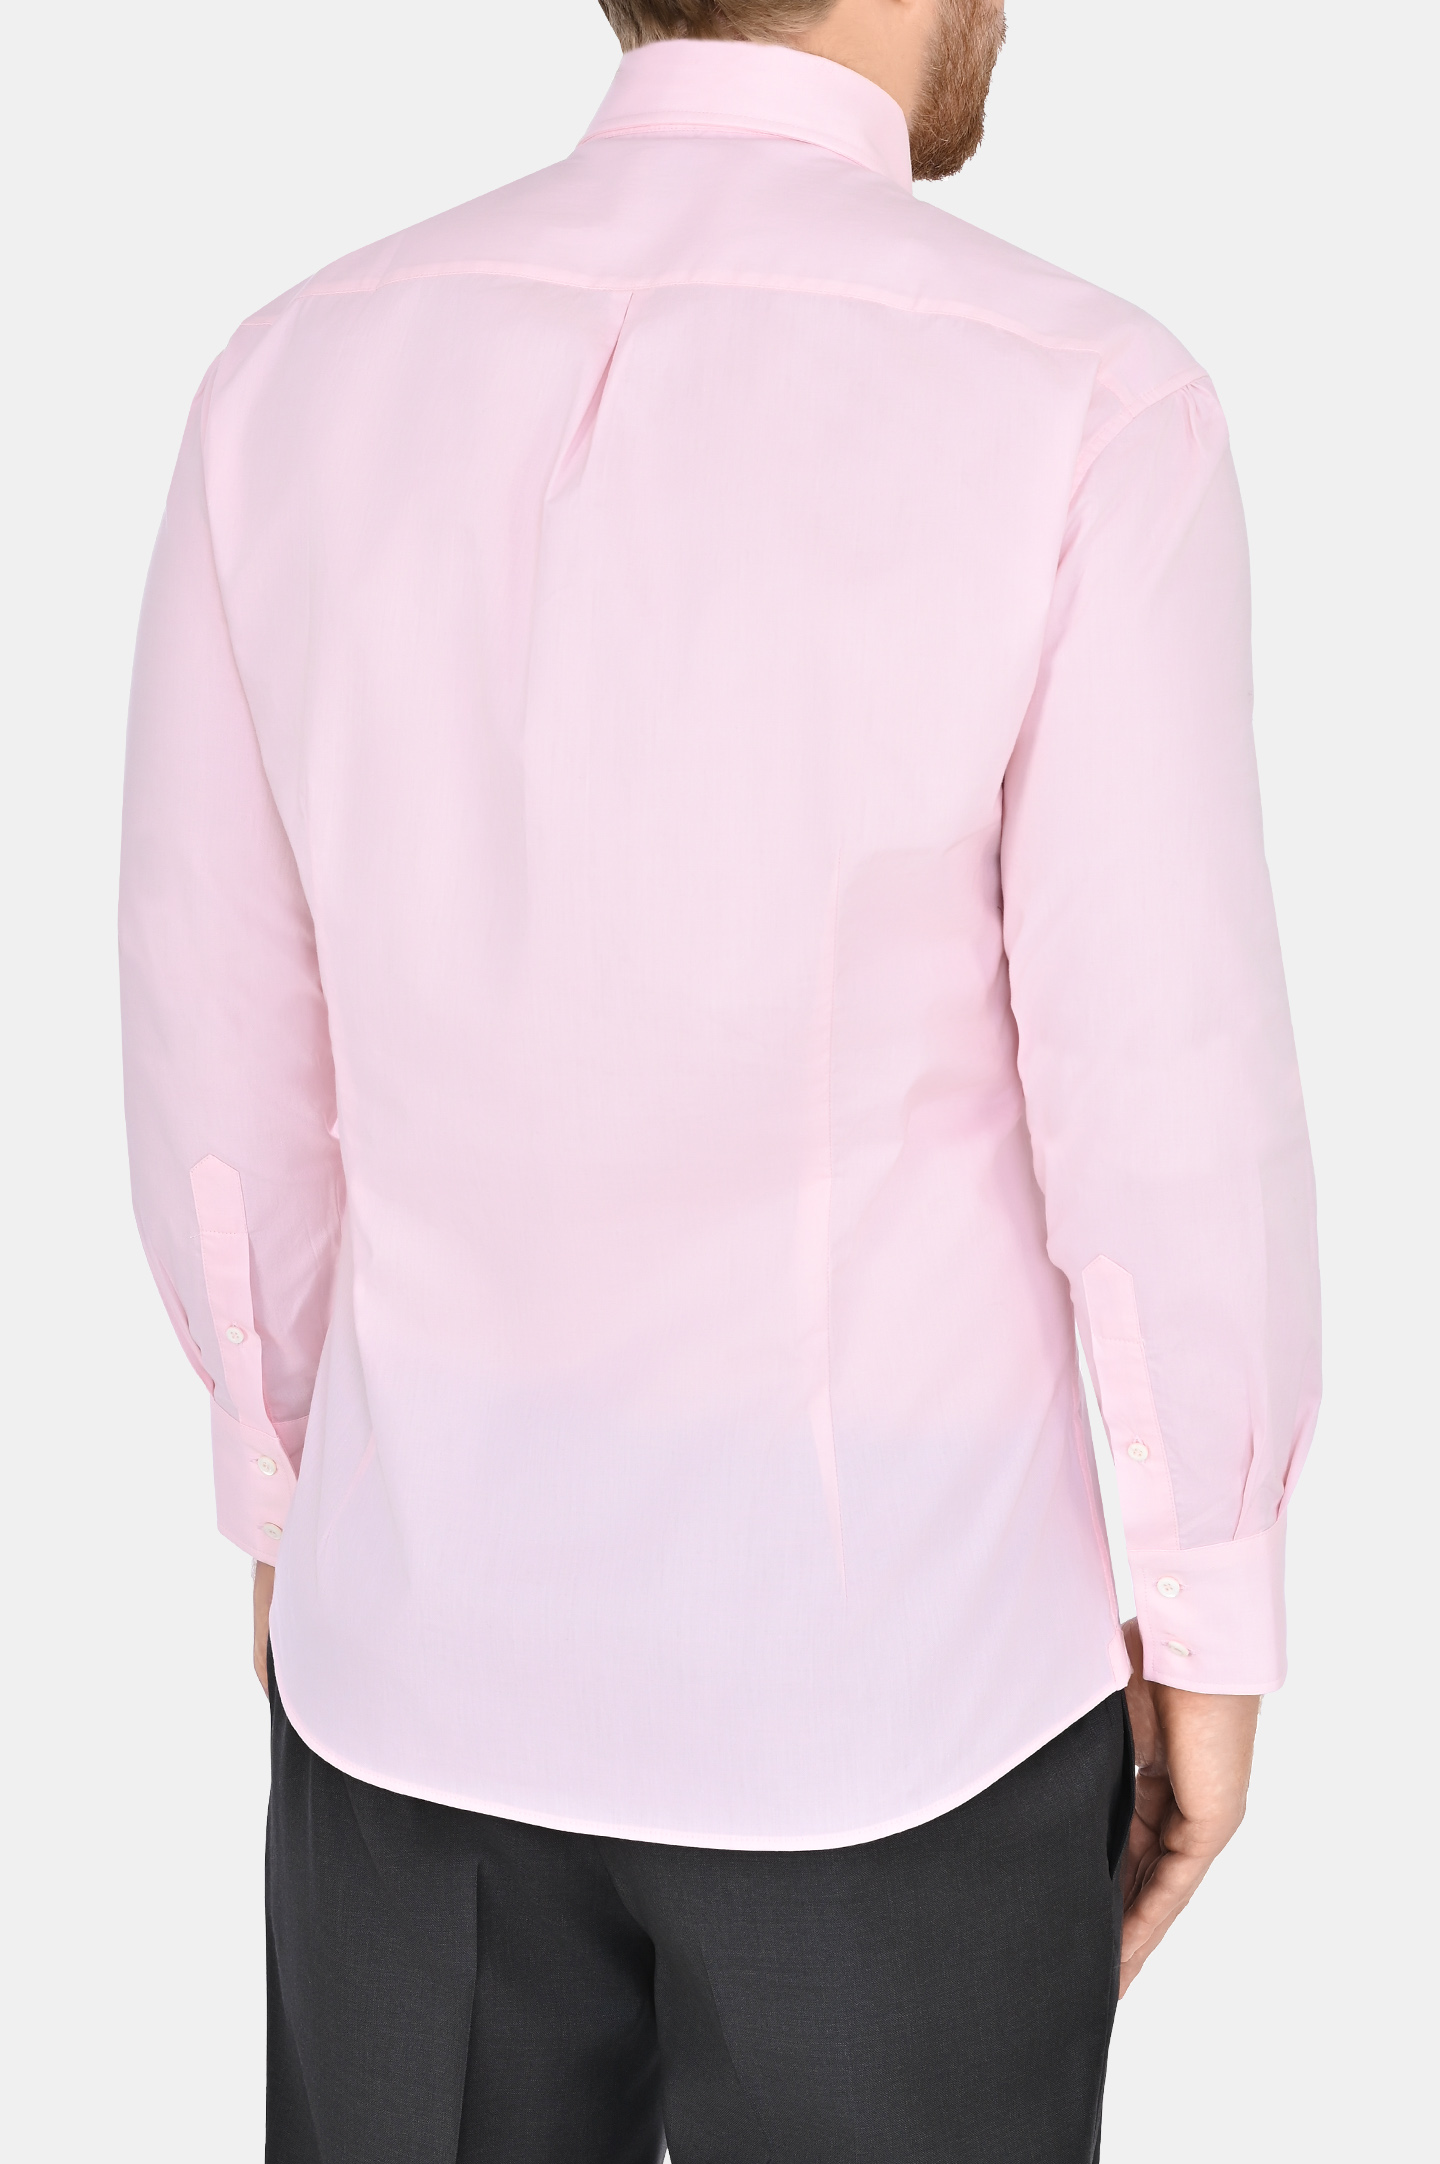 Рубашка BRUNELLO  CUCINELLI MM6341716, цвет: Розовый, Мужской